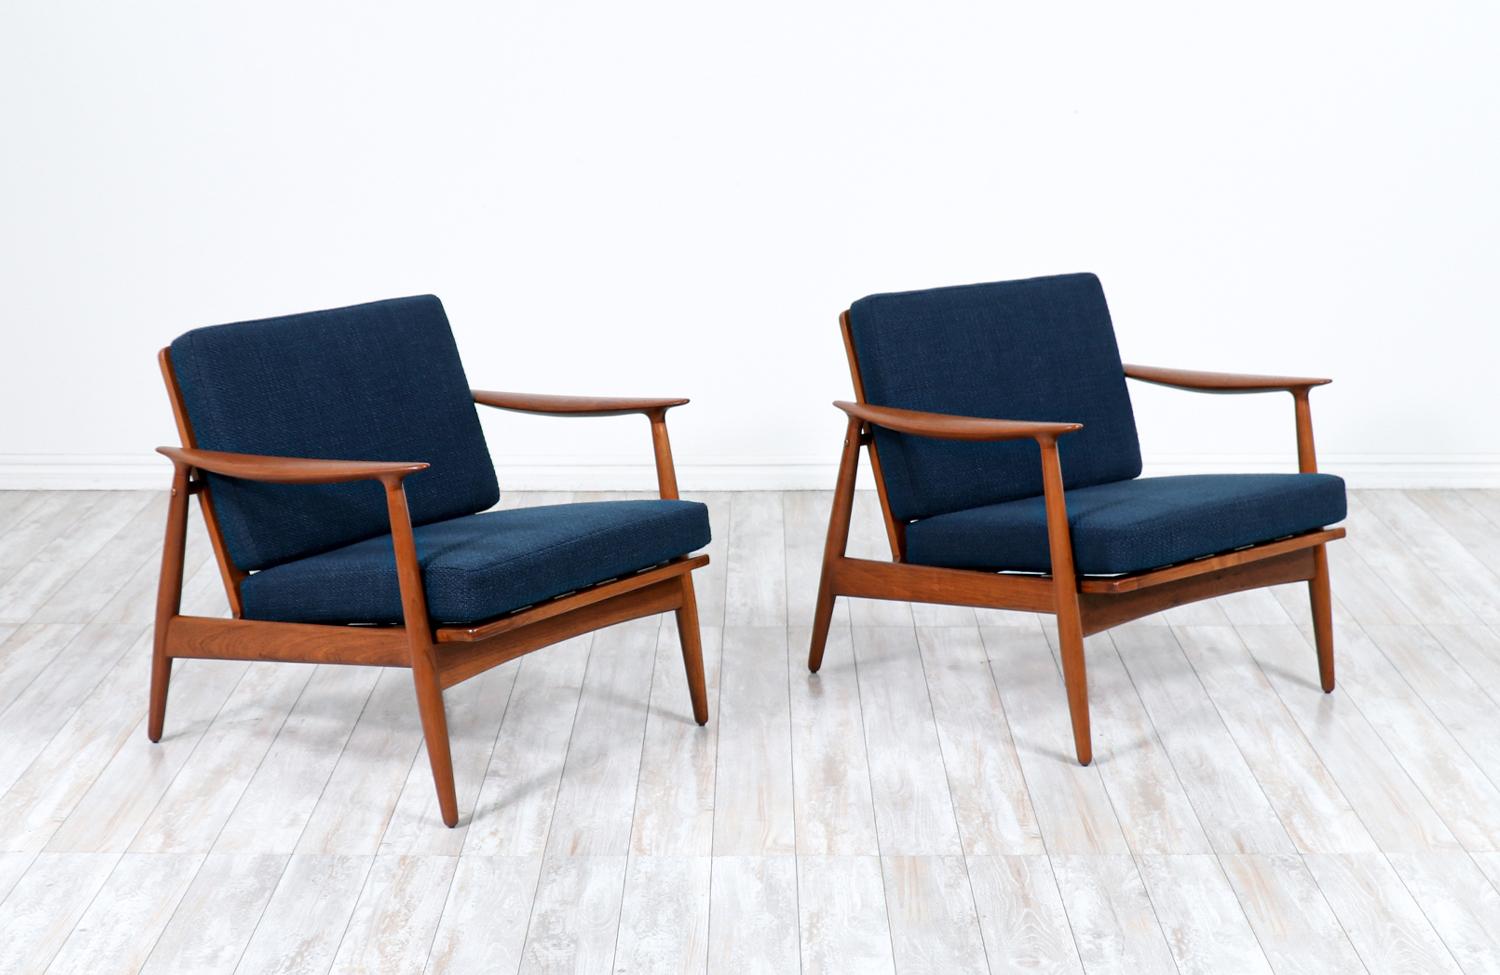 Moderne dänische Lounge-Stühle aus Teakholz von John Bone.

________________________________________

Die Umgestaltung eines Mid-Century Modern-Möbels ist wie die Wiederbelebung der Geschichte, und wir gehen diese Reise mit Leidenschaft und